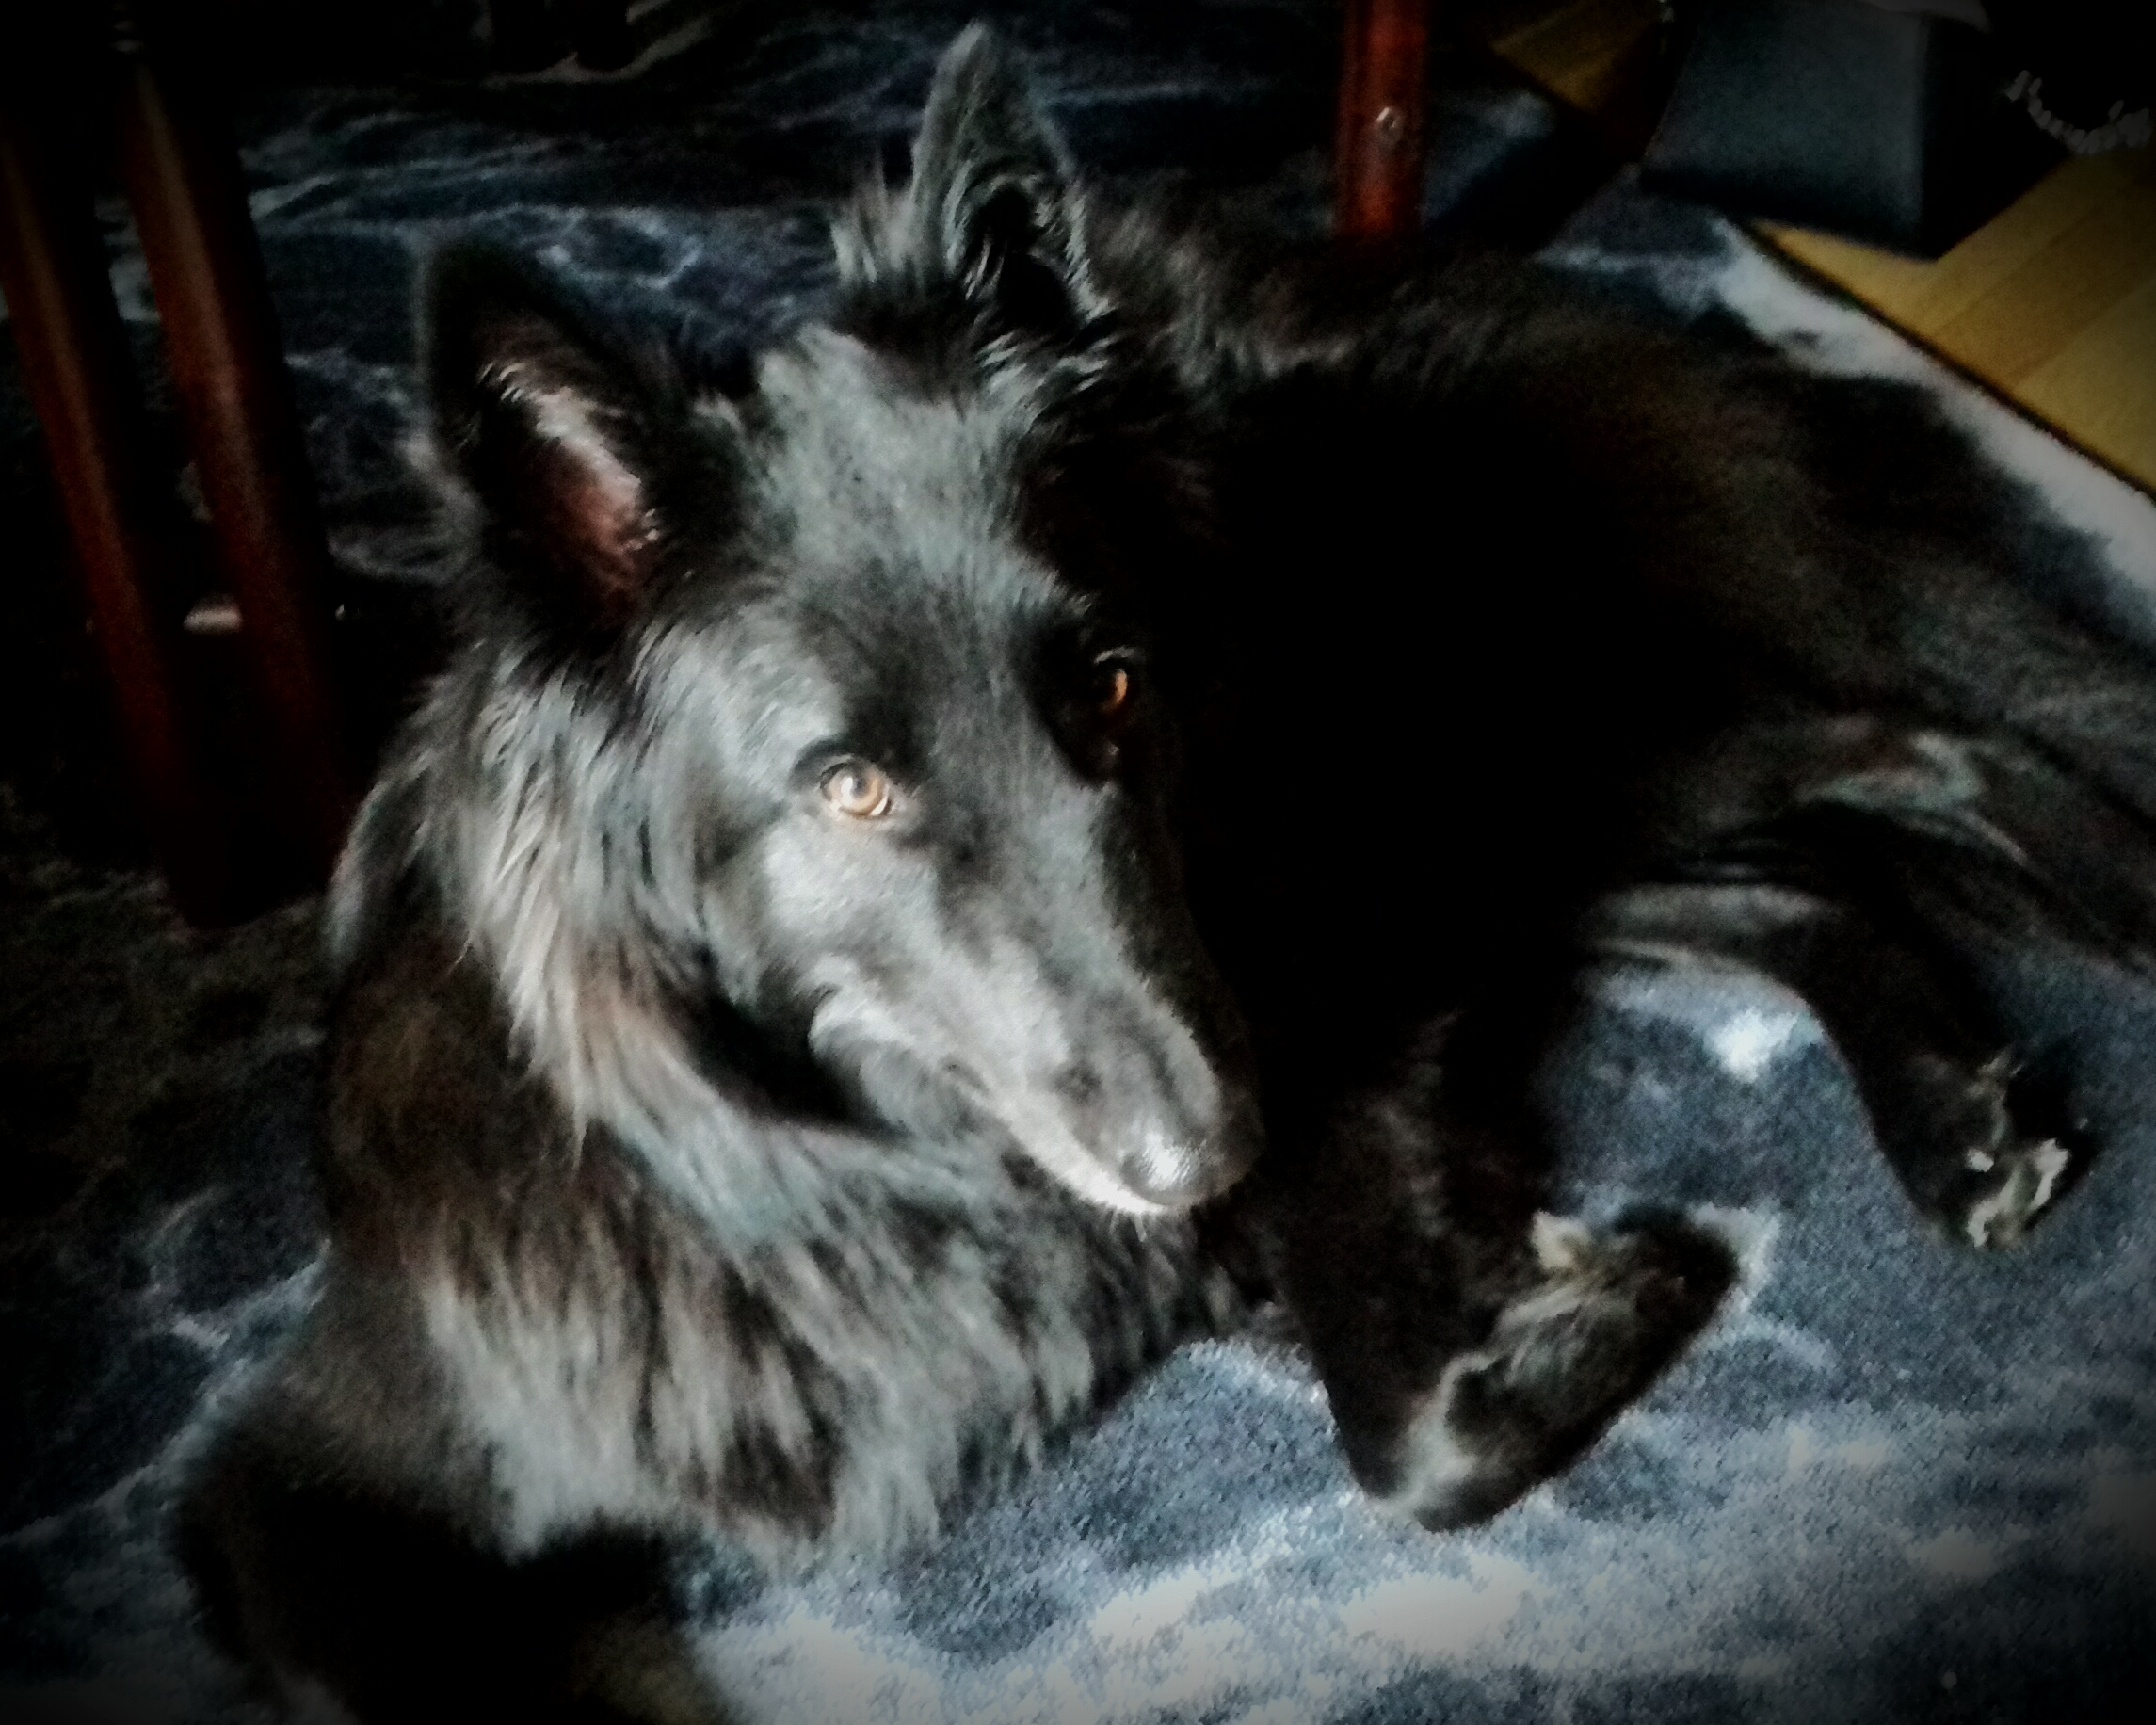 Syntolkning: svart groenendael (belgisk vallhund) ligger på en gråflammig matta och tittar in i kameran